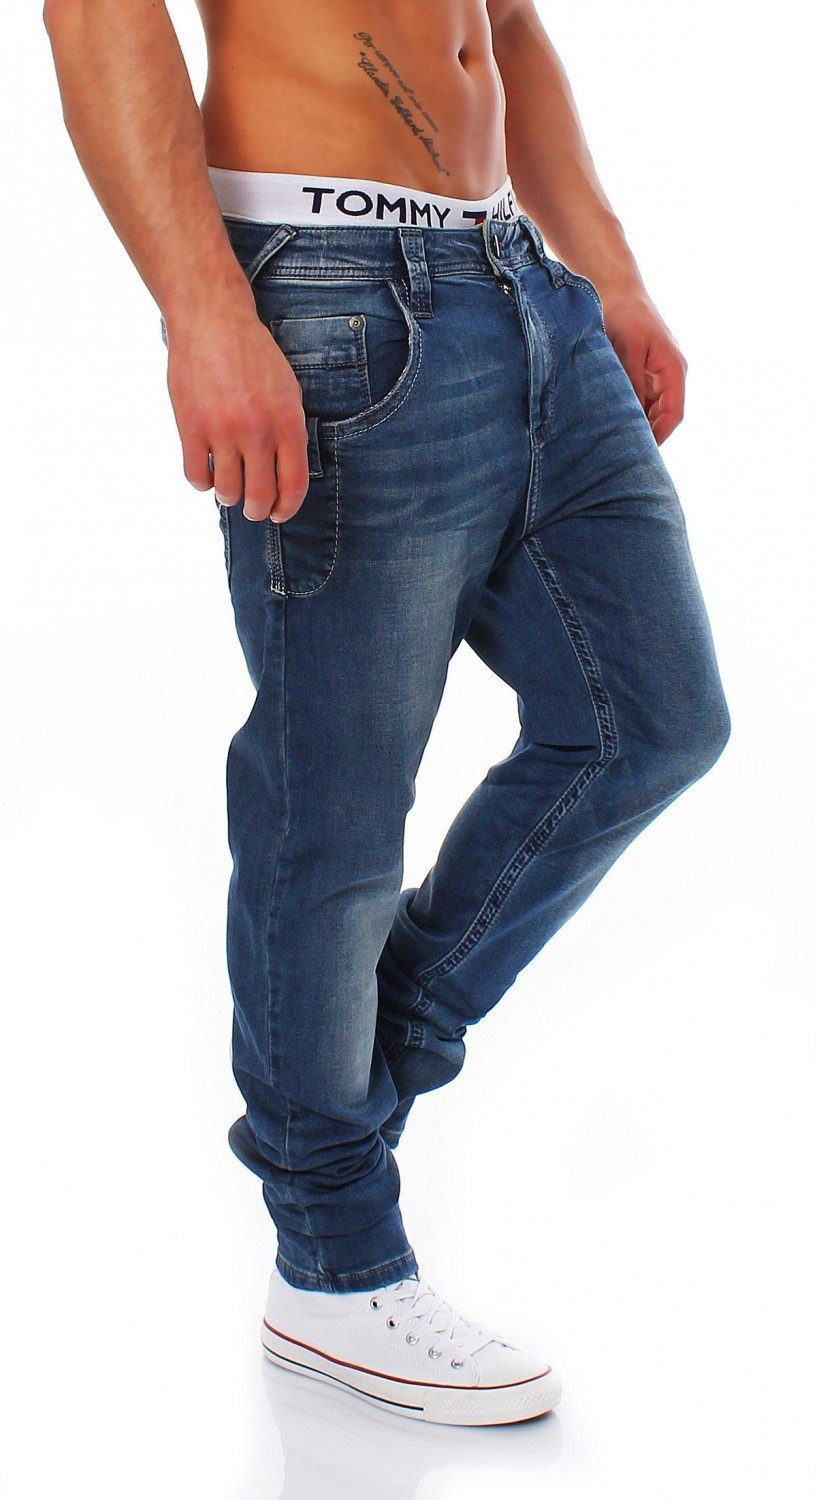 & - BAXX Cipo CIPO C-1194 - - Hose Baxx Men Slim-fit-Jeans Slim / Herren Fit & Jeans